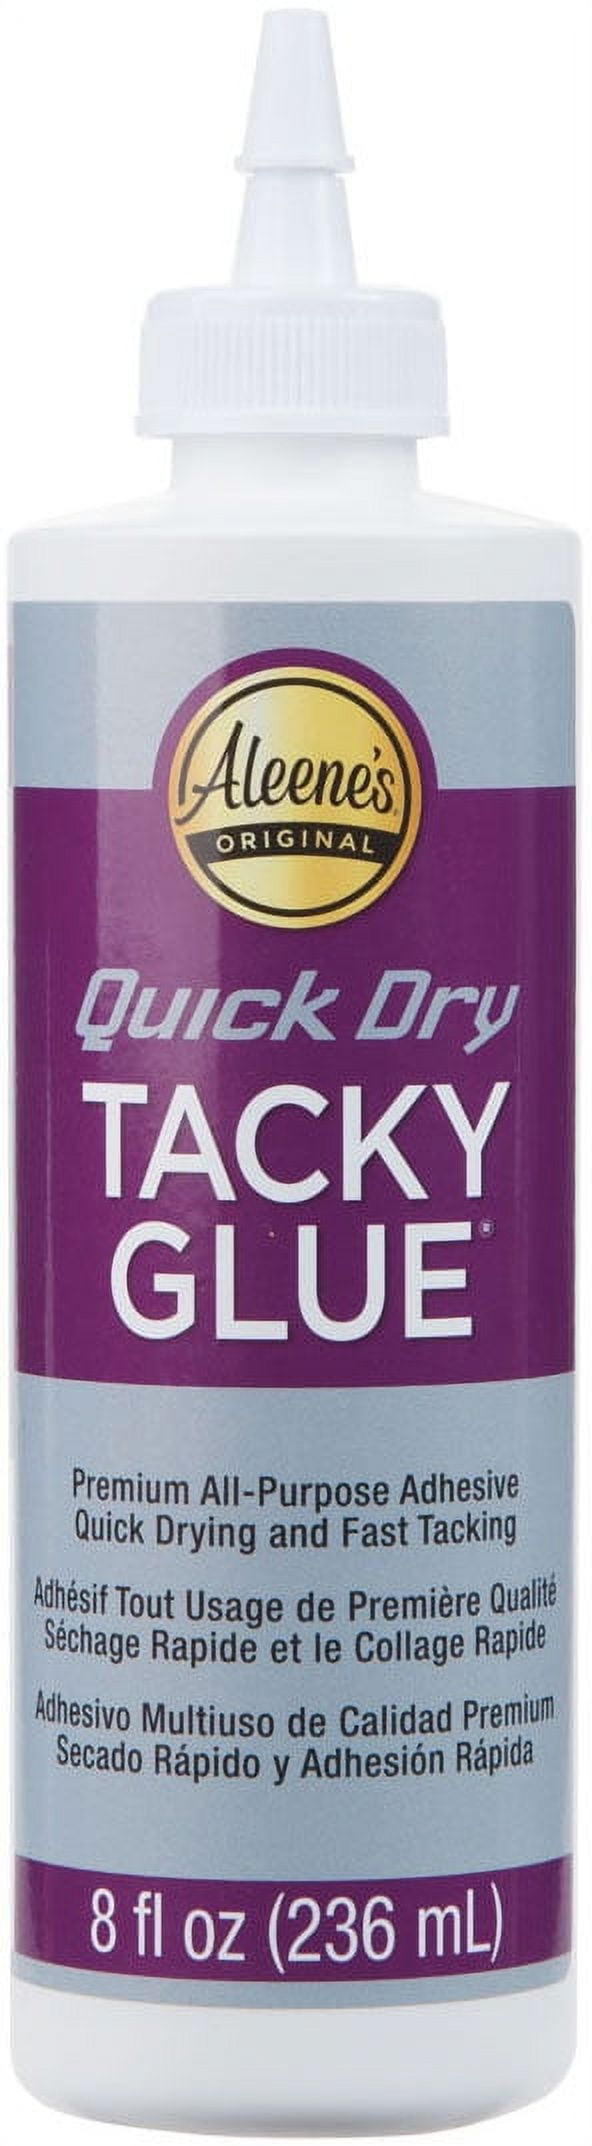 Aleenes School Tacky Glue, 8 oz.